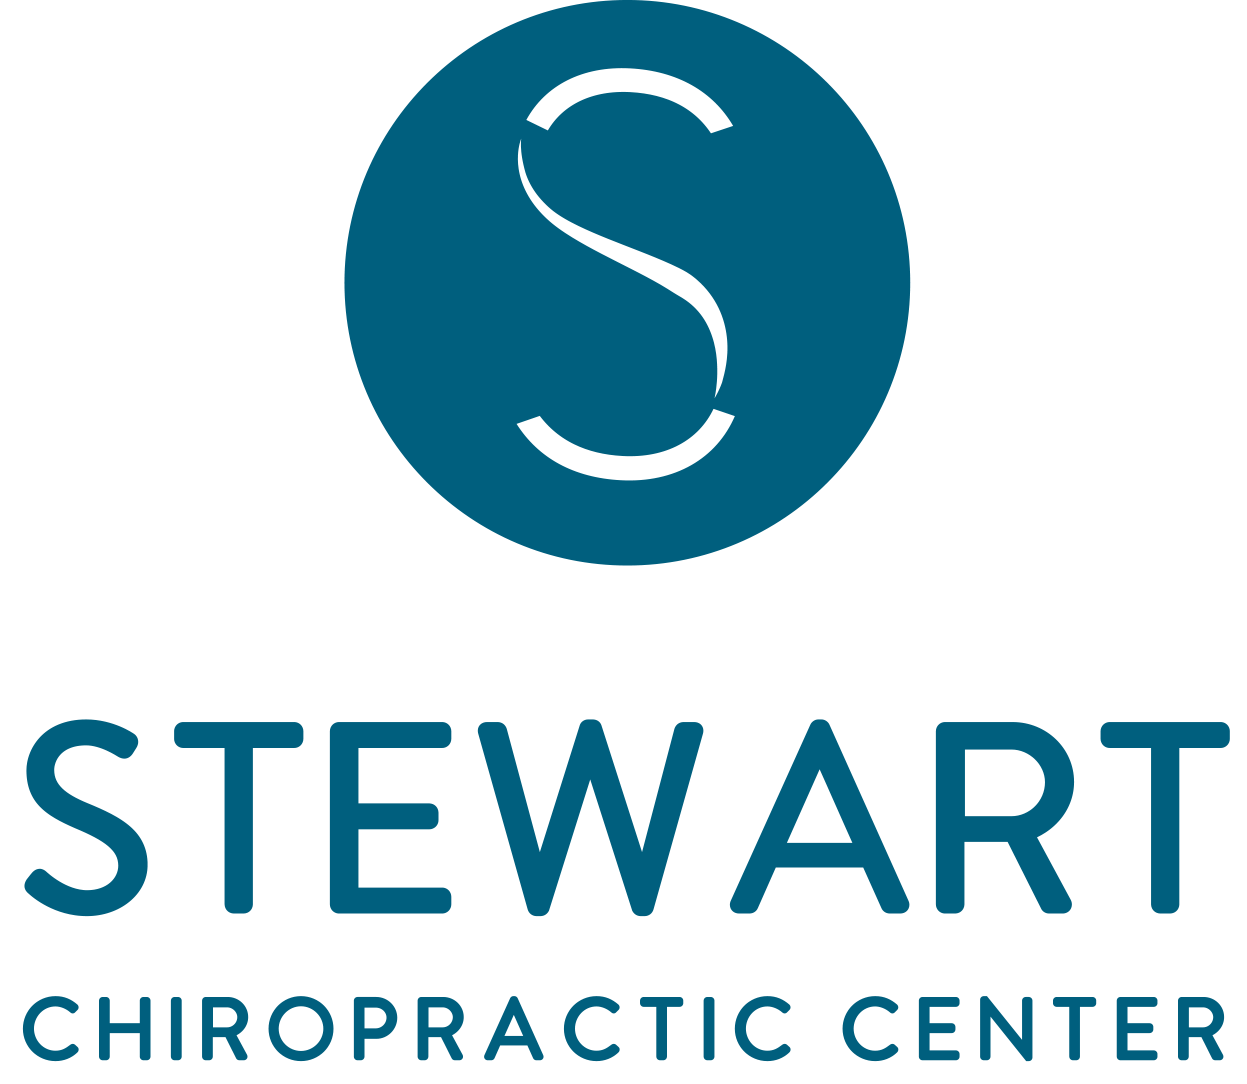 Stewart Chiropractic